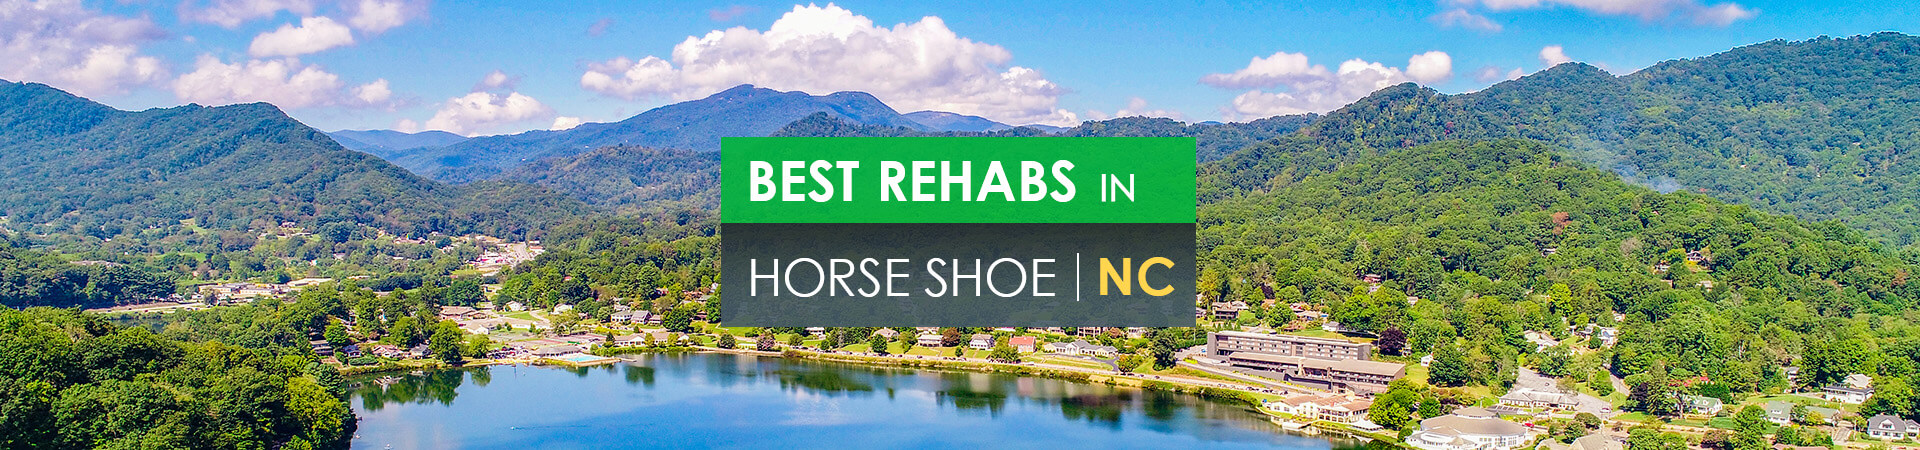 Best rehabs in Horse Shoe, NC